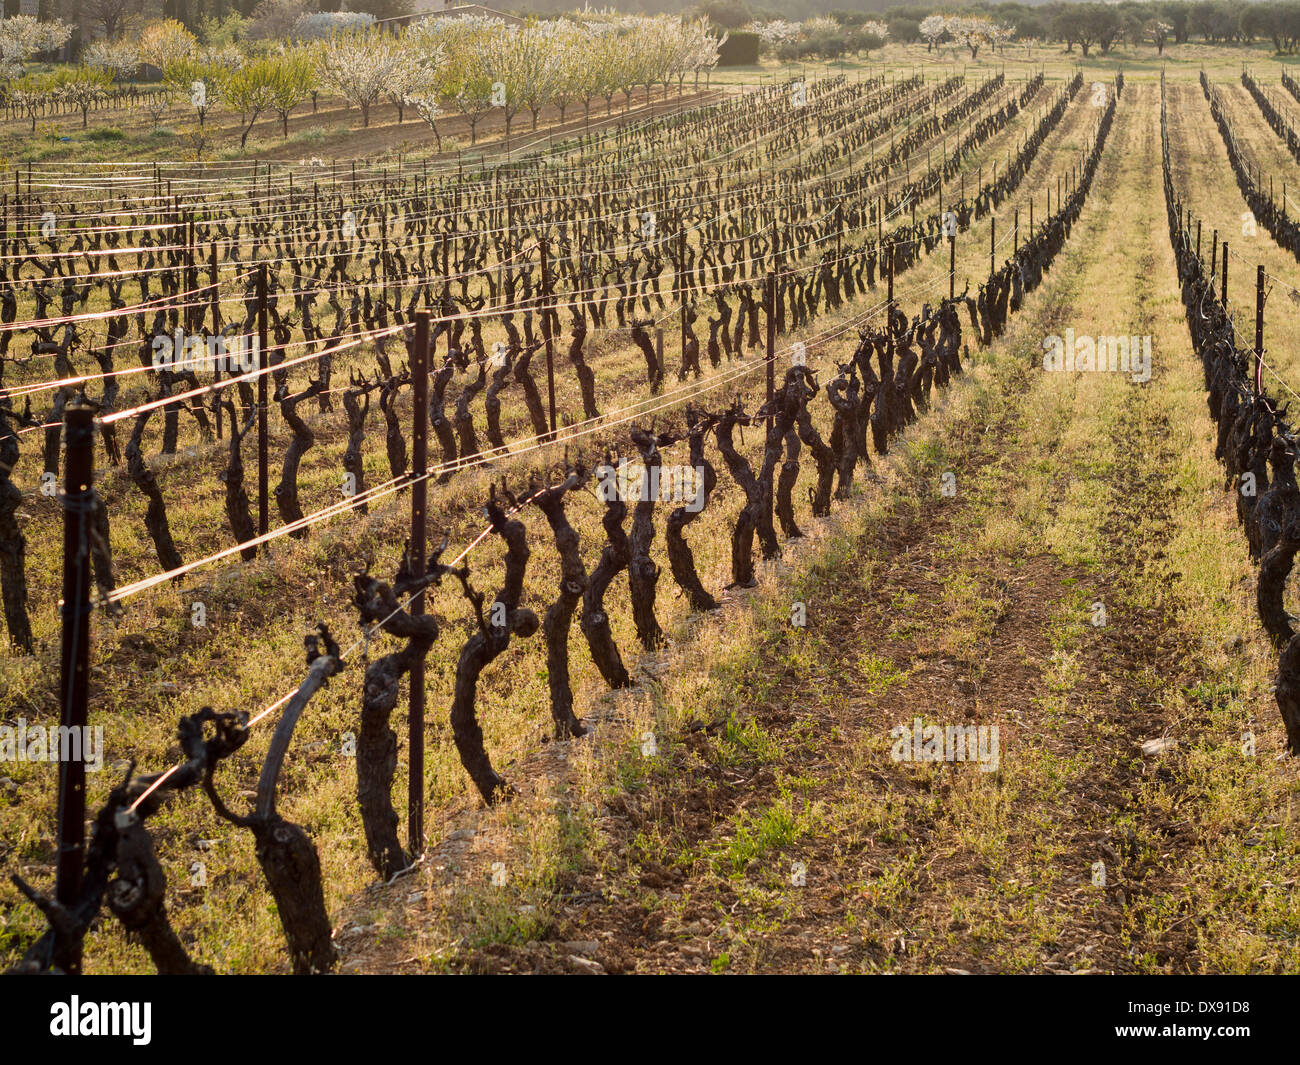 Beschnittene Weinberg im Frühjahr. Reihen von Weinreben, stark beschnitten, bereit für neues Wachstum im Frühjahr keimen. Stockfoto